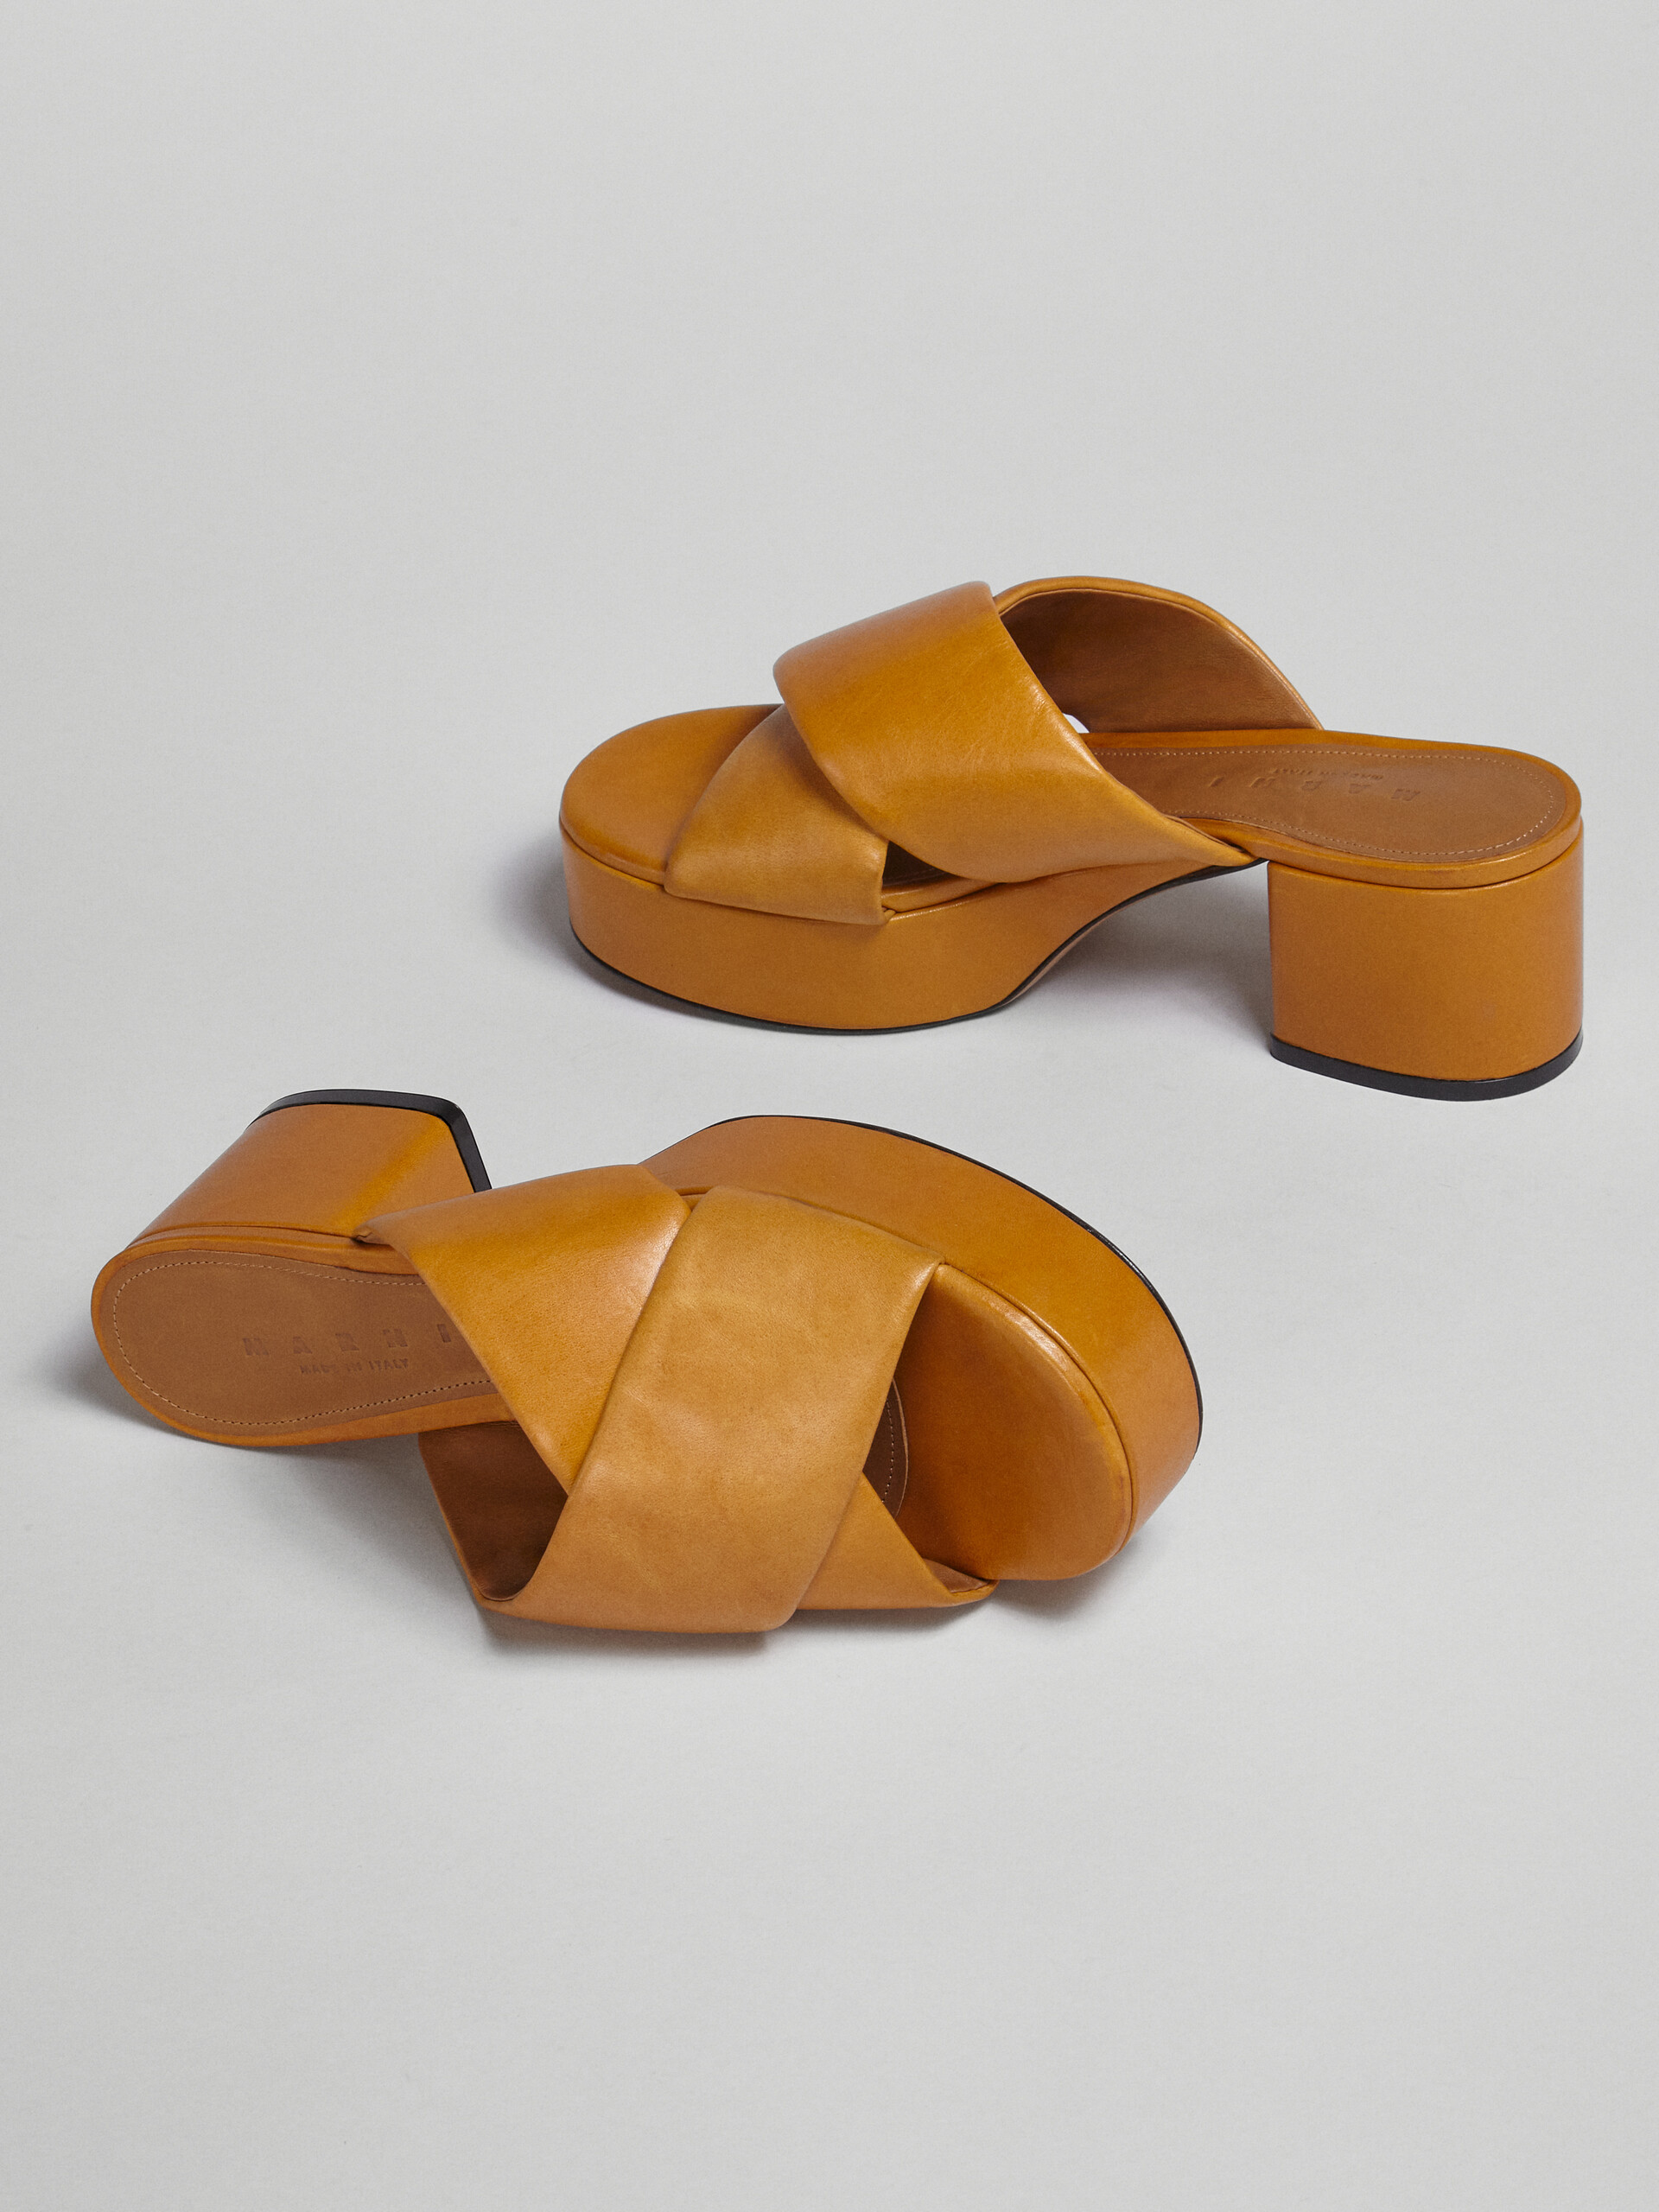 Sandale en cuir jaune tannage végétal - Sandales - Image 5